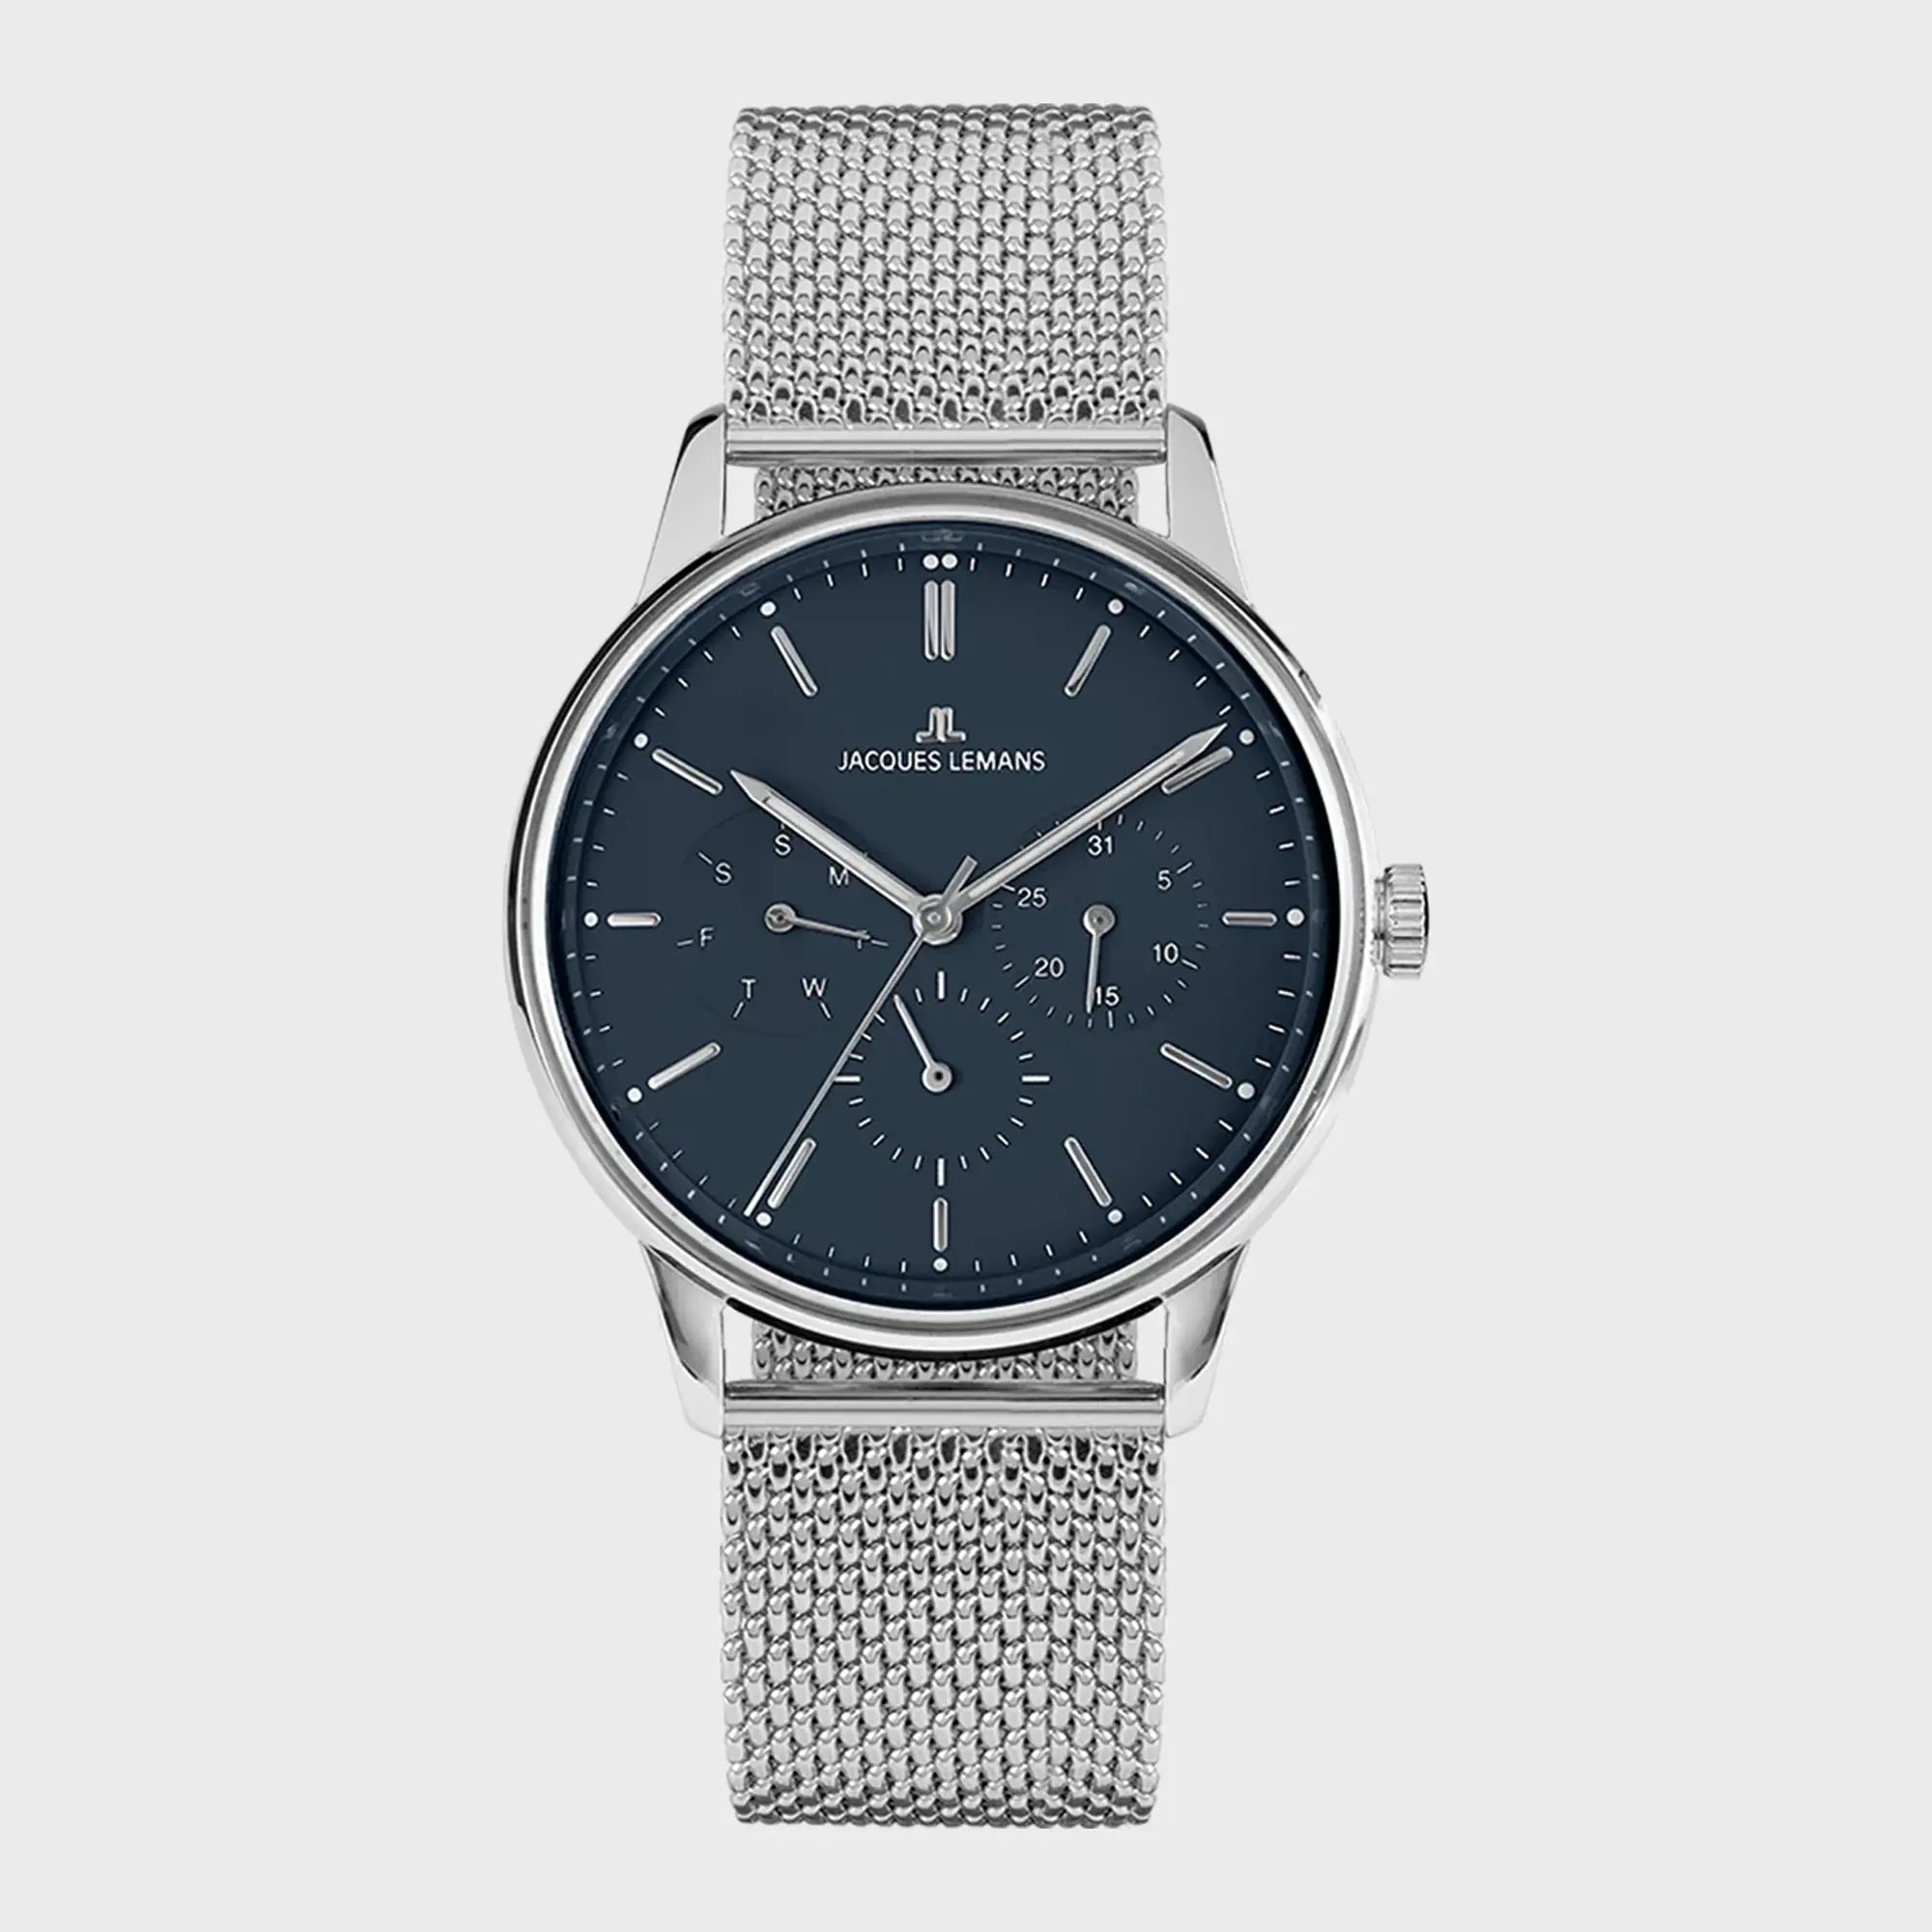 Frontale Ansicht der Jacques Lemans Uhr "Manchester" mit einem dunkelblauen Zifferblatt mit Kalenderanzeigen an einem Edelstahl-Mesh-Armband